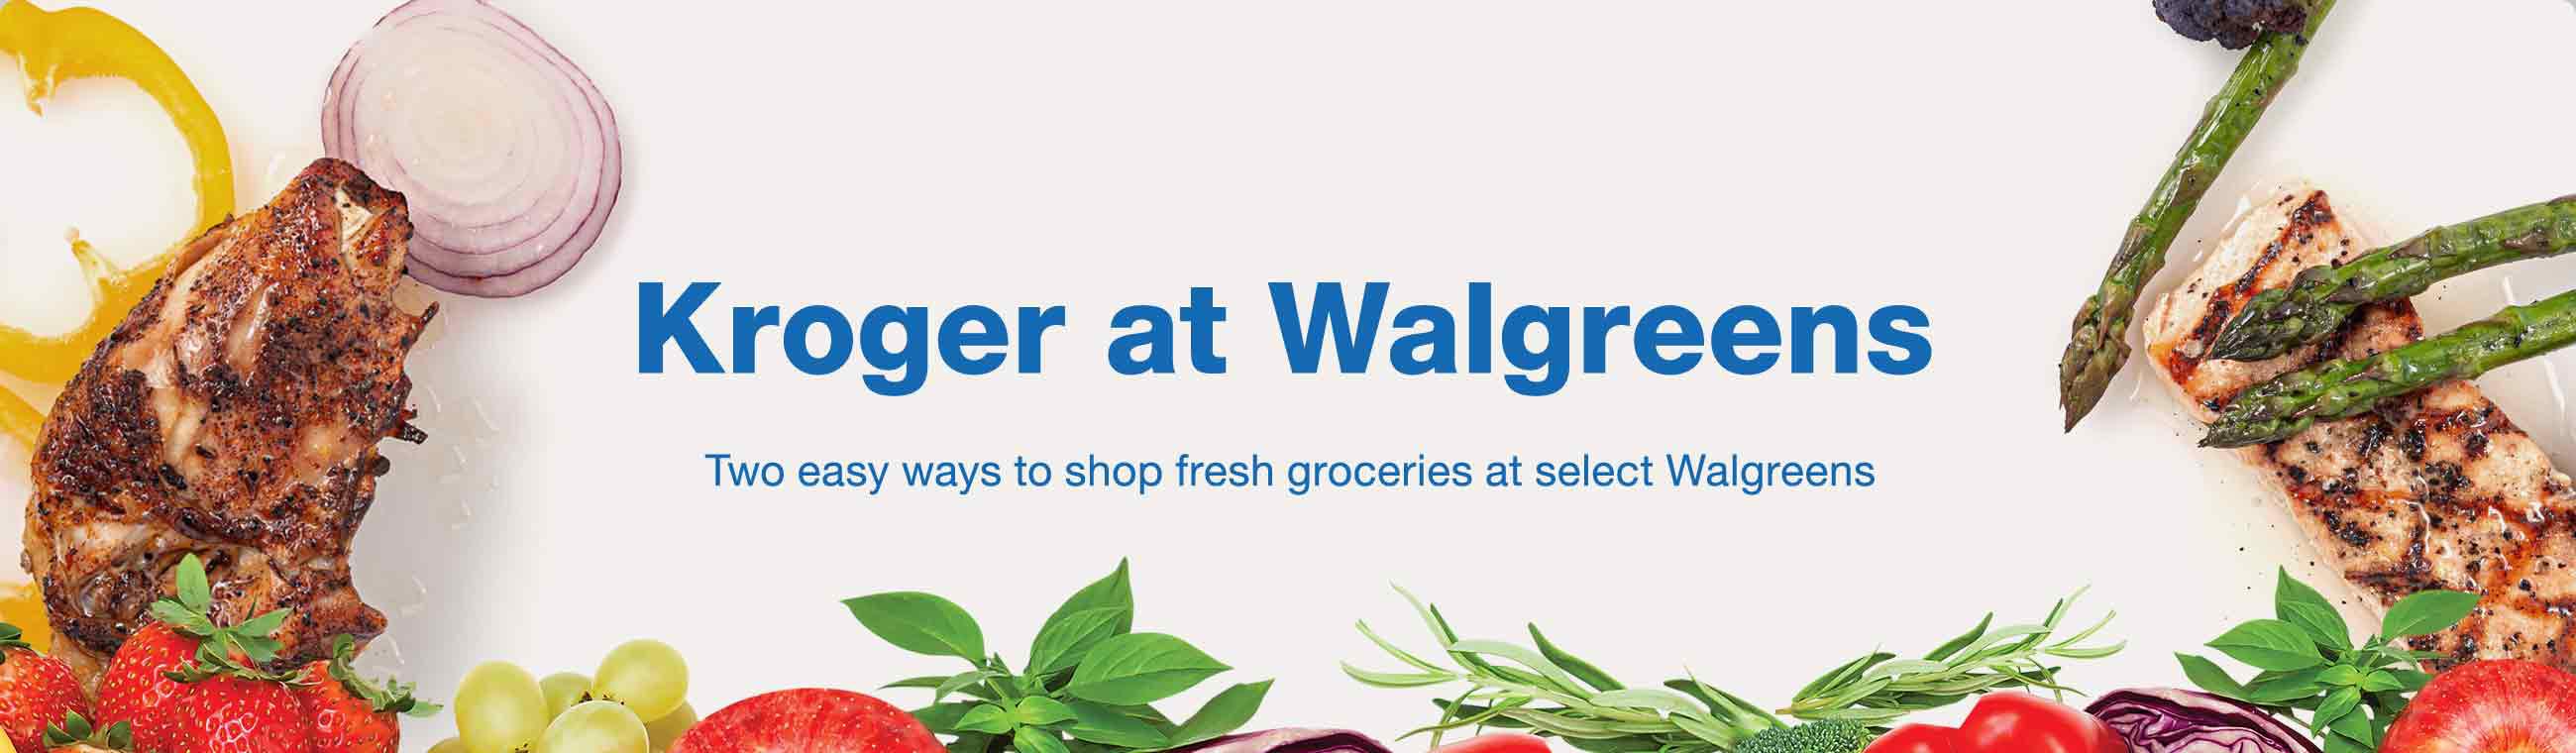 Kroger Express at Walgreens Photo